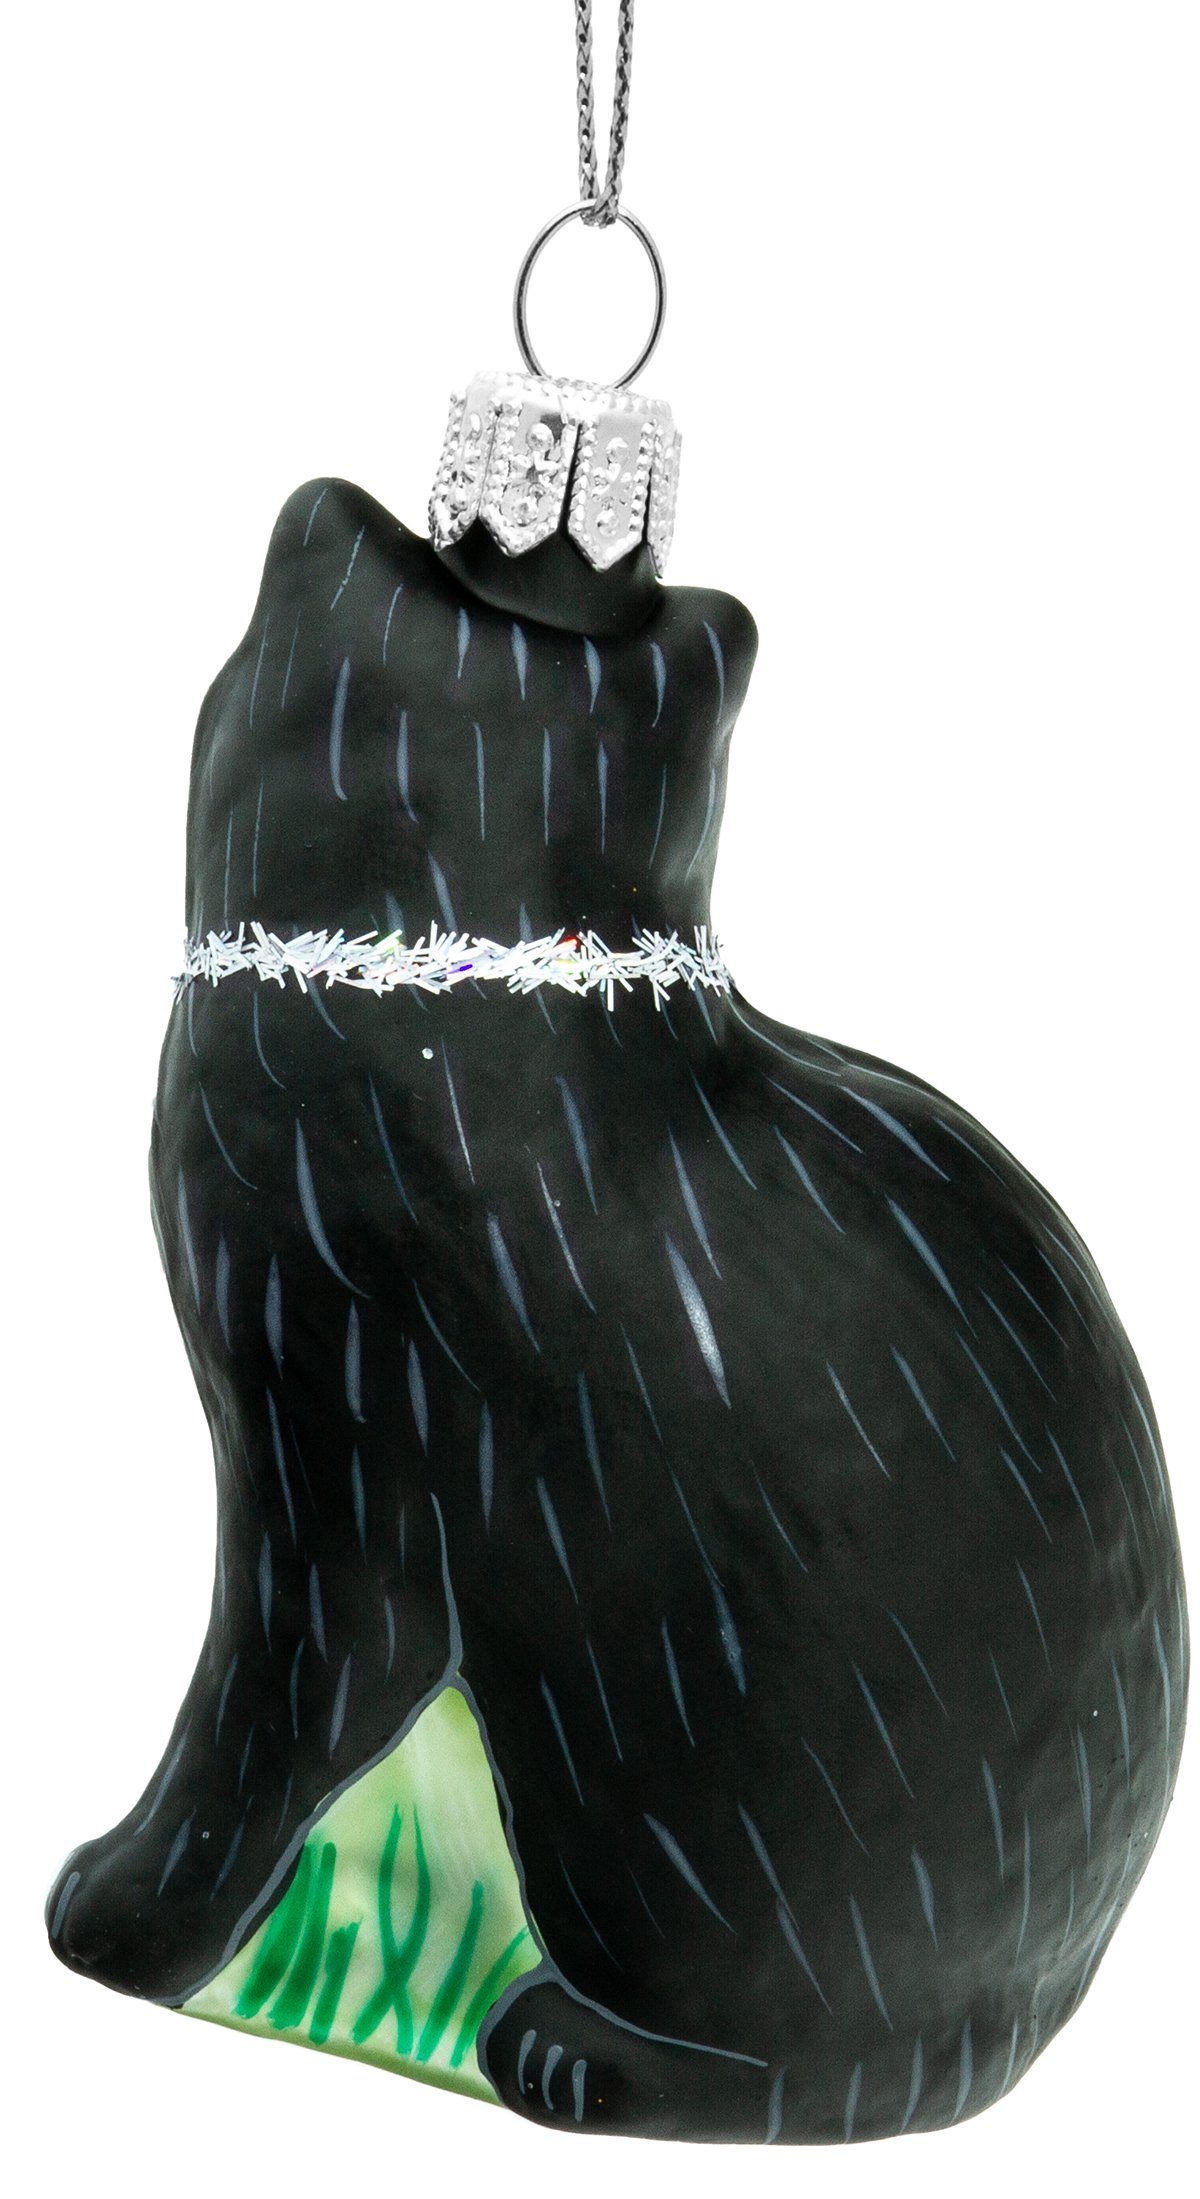 Line BS705 SIKORA Figur Christbaumschmuck Weihnachtsbaum - schwarz Kristall mit Premium Katze Glas Anhänger